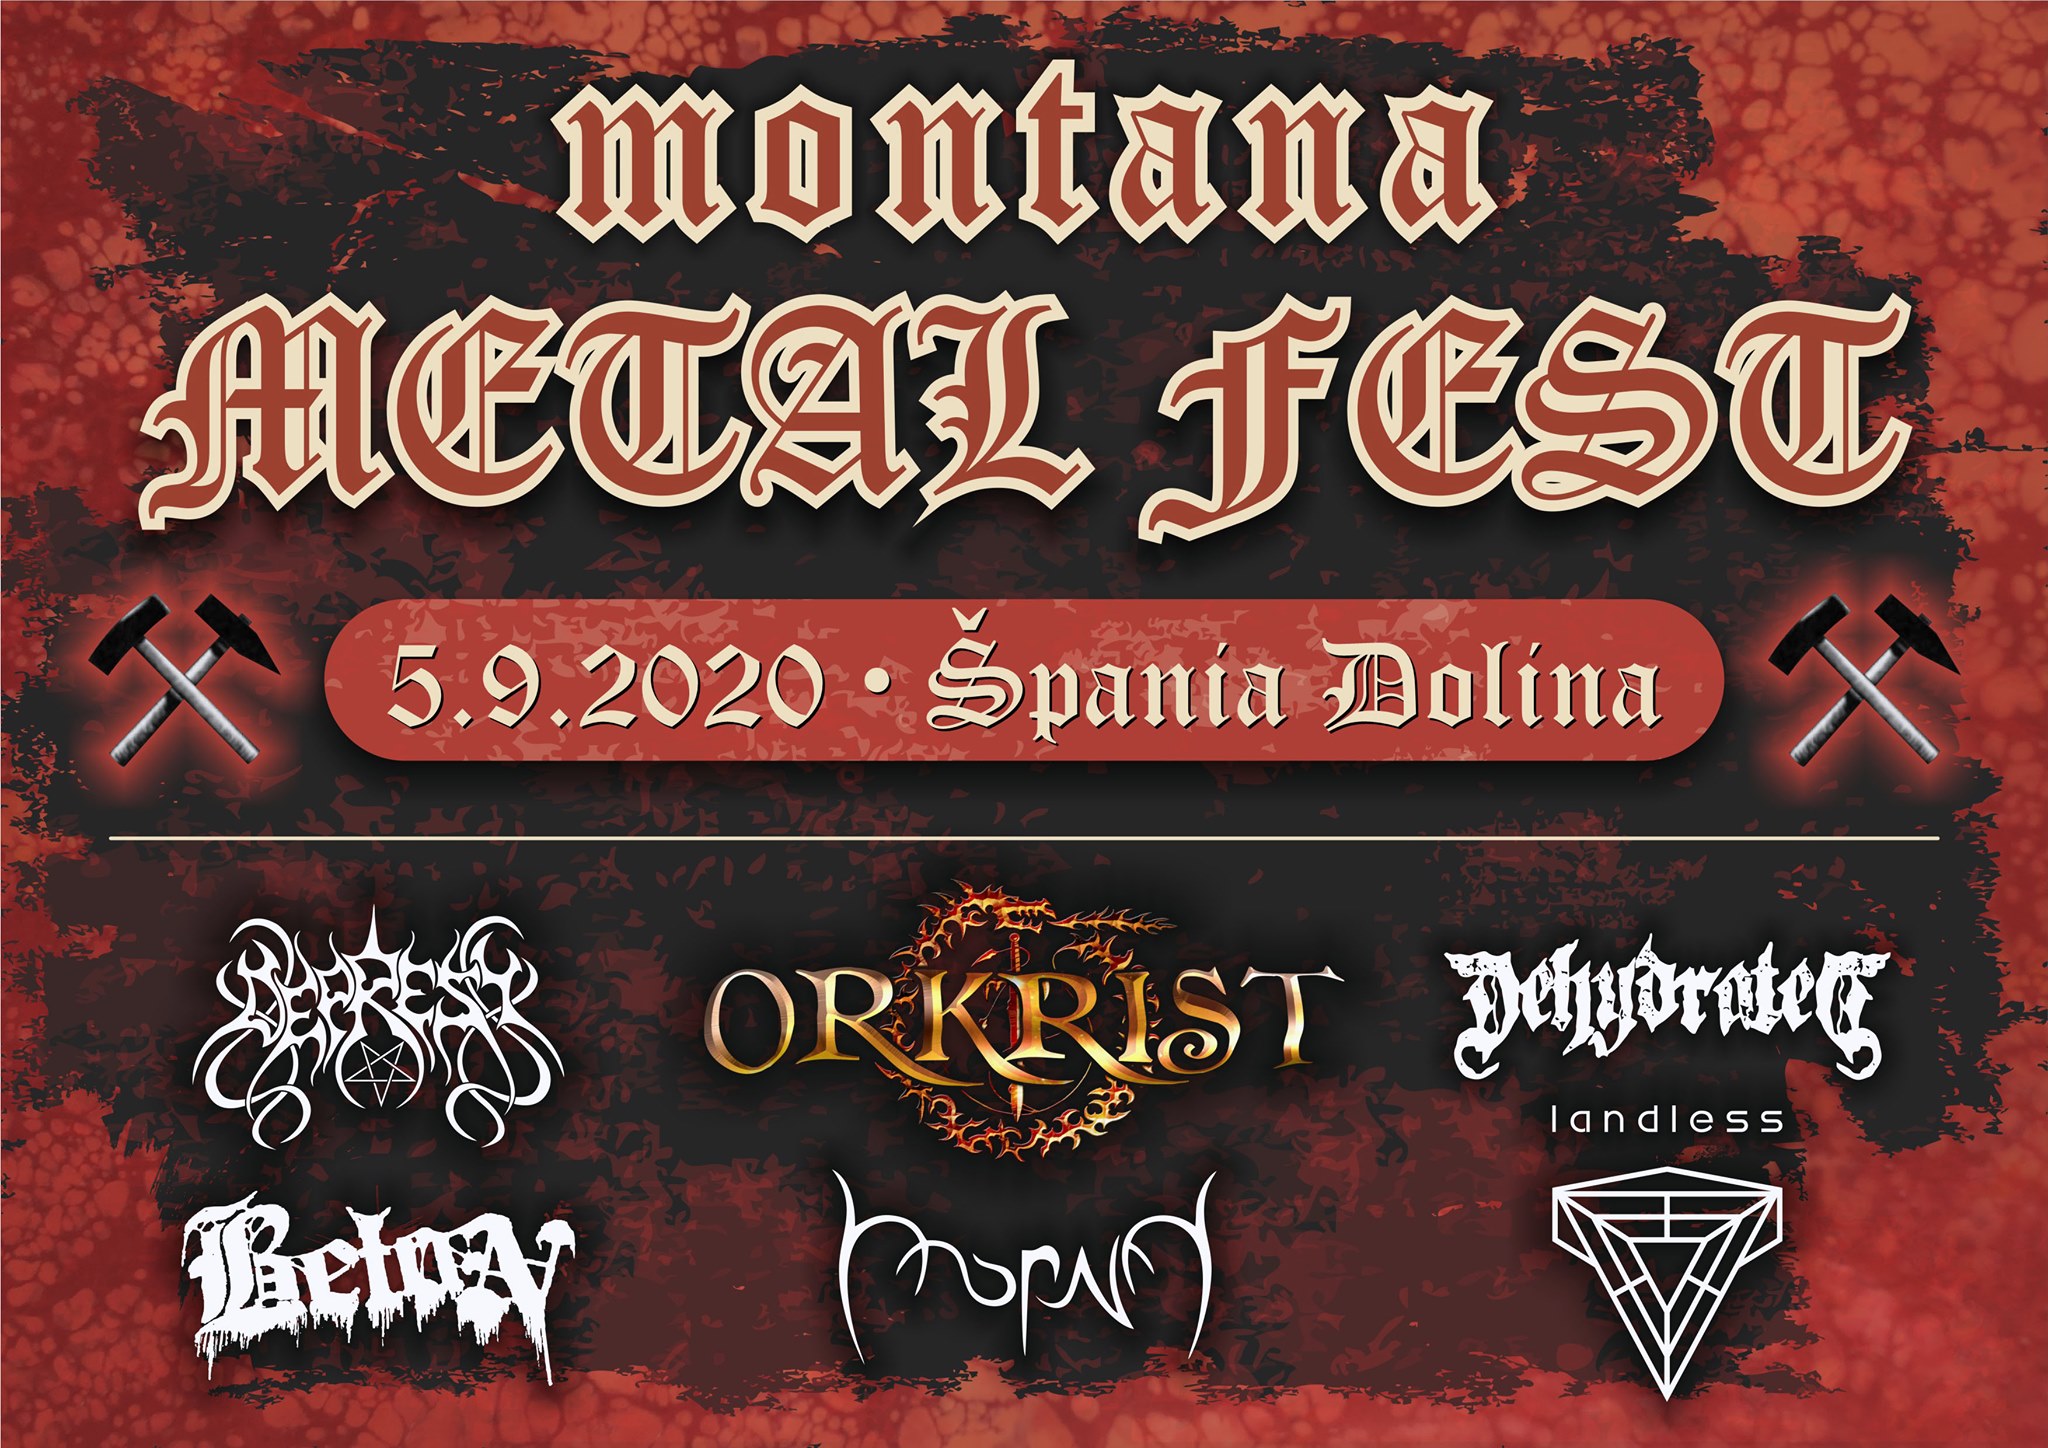 NOV - - - MONTANA metalfest pania Dolina 2020